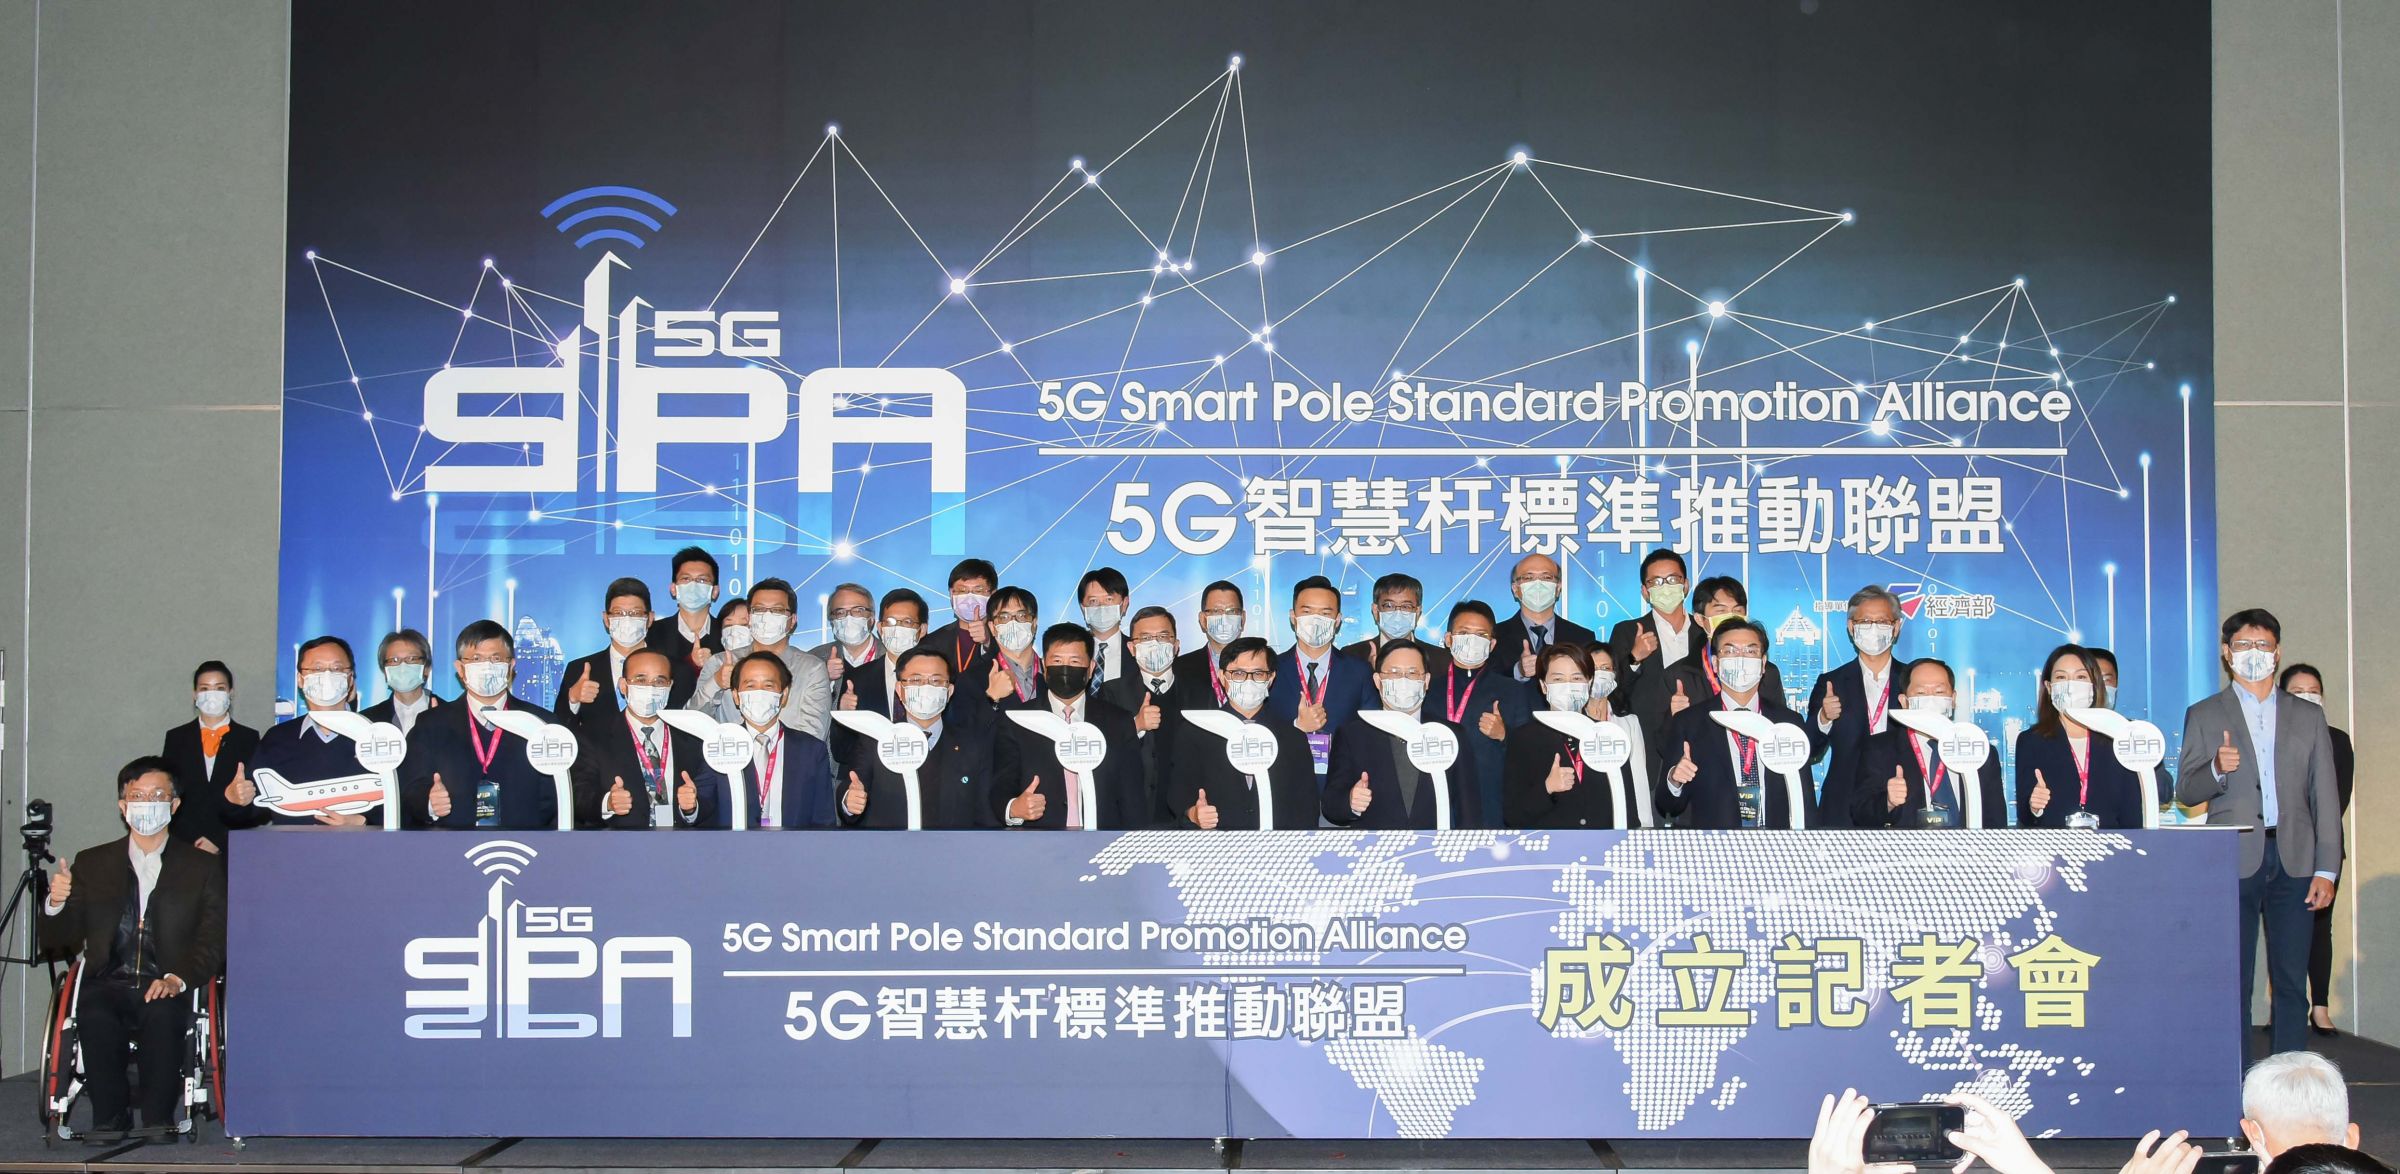 Proscend nahm an der Pressekonferenz der 5G Smart Pole Standard Promotion Alliance teil.